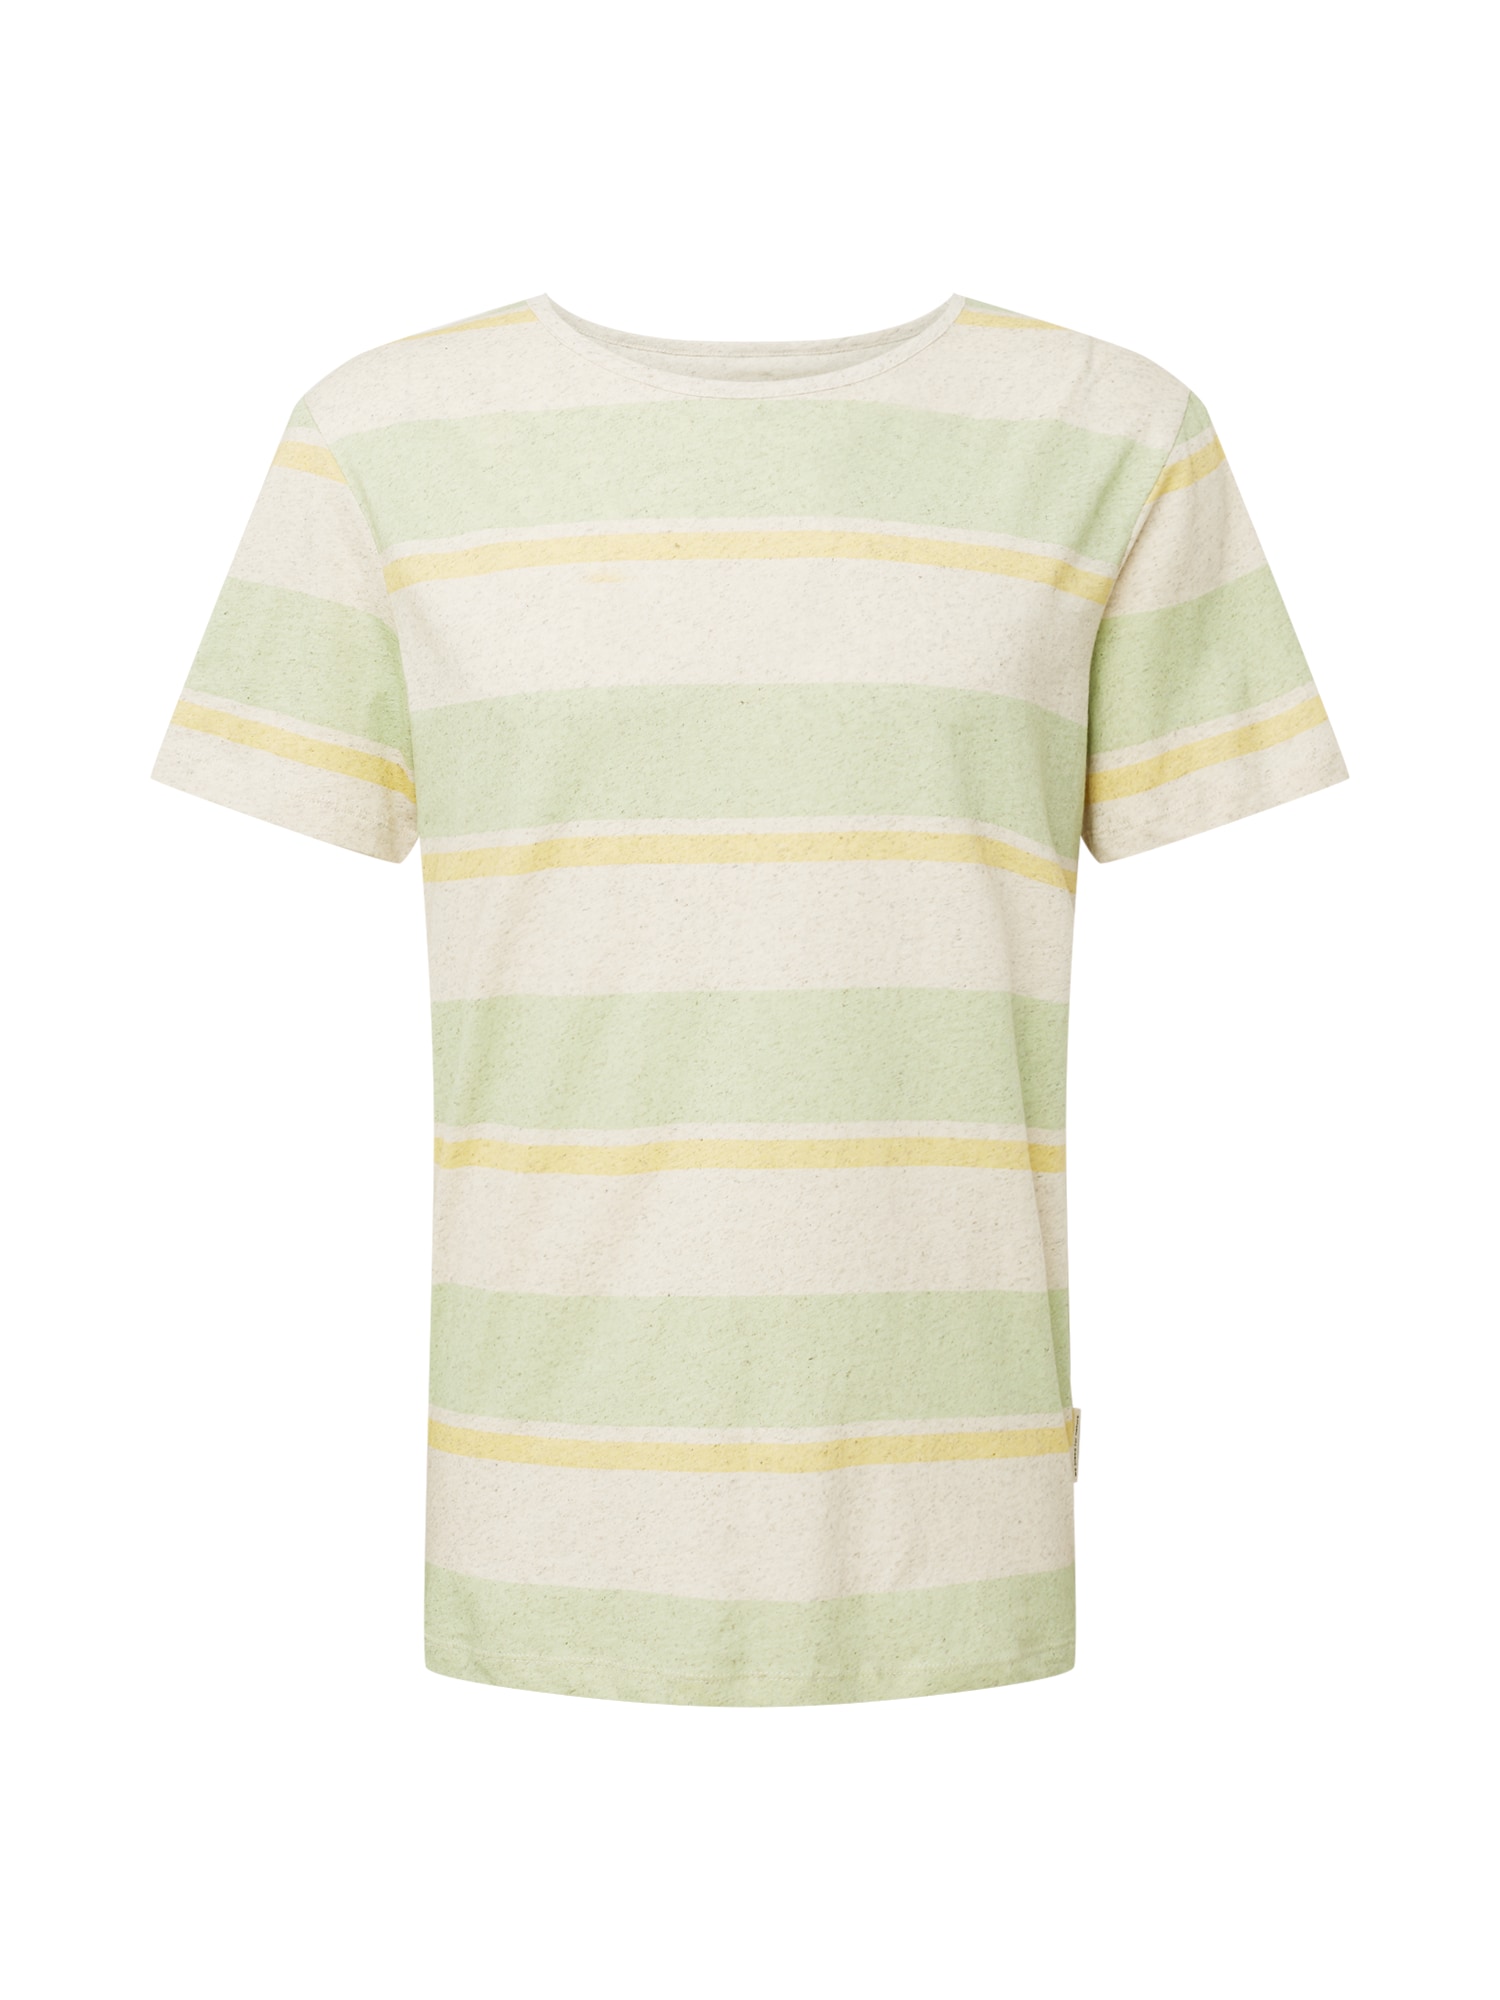 bleed clothing Marškinėliai natūrali balta / šviesiai geltona / pastelinė žalia